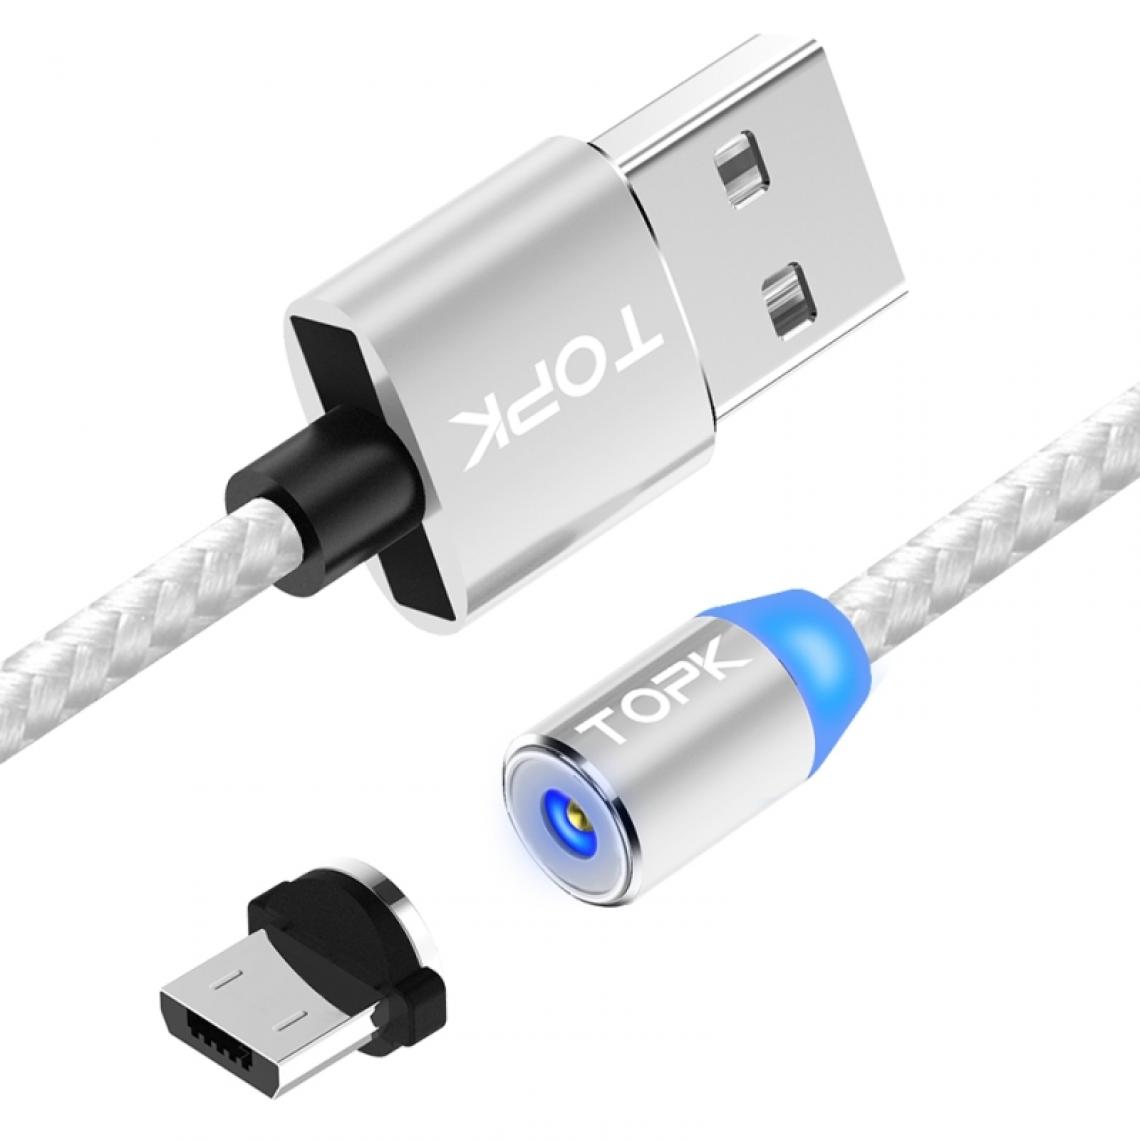 Wewoo - Câble de charge magnétique tressé en nylon avec indicateur LED1 m2,4 A max USB à Micro USB argent - Chargeur secteur téléphone